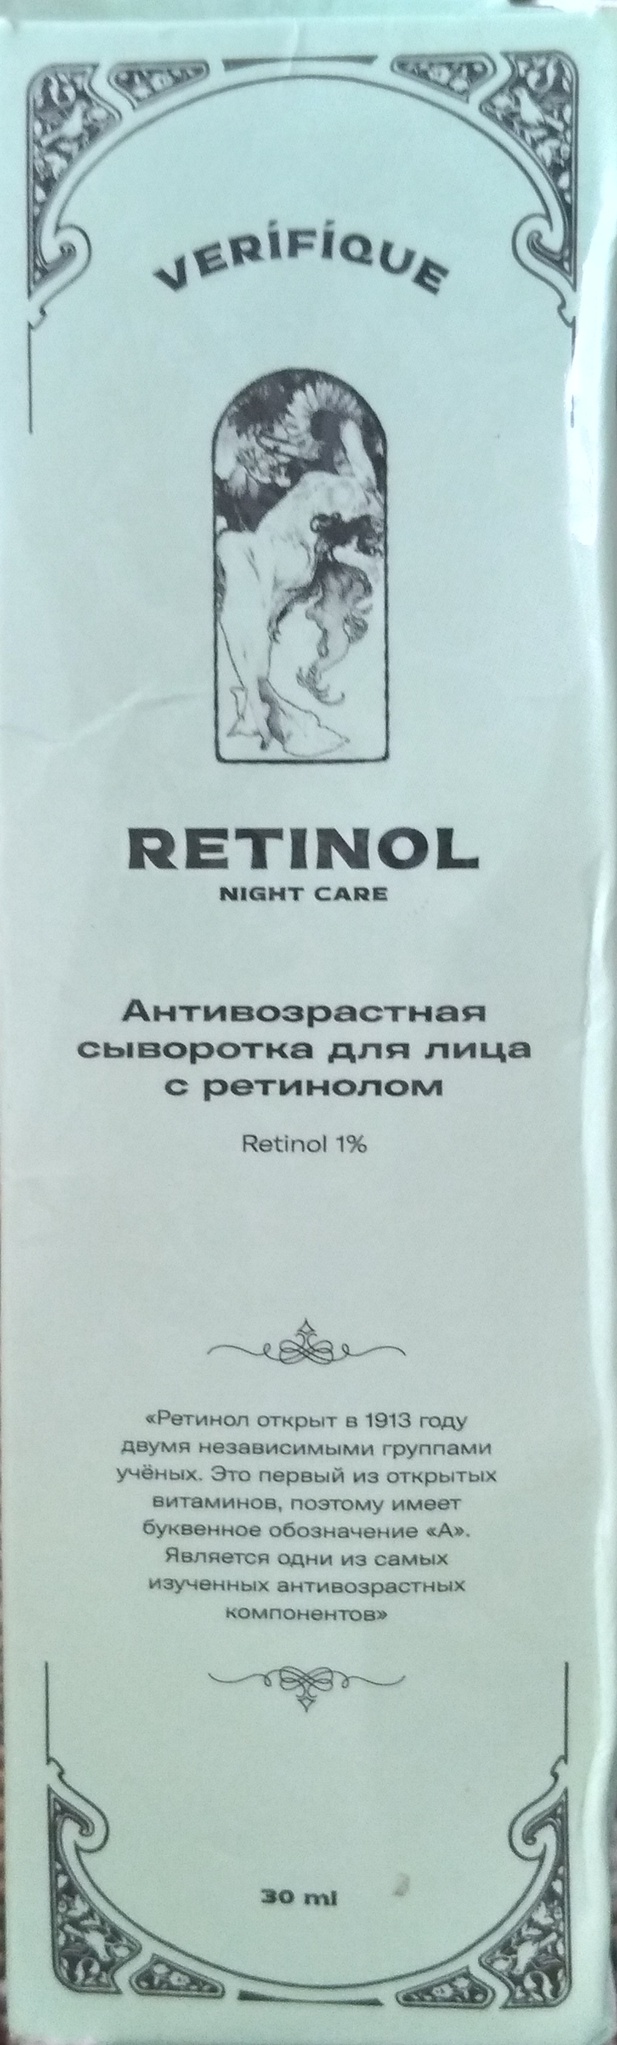 Verifique Retinol Night Care